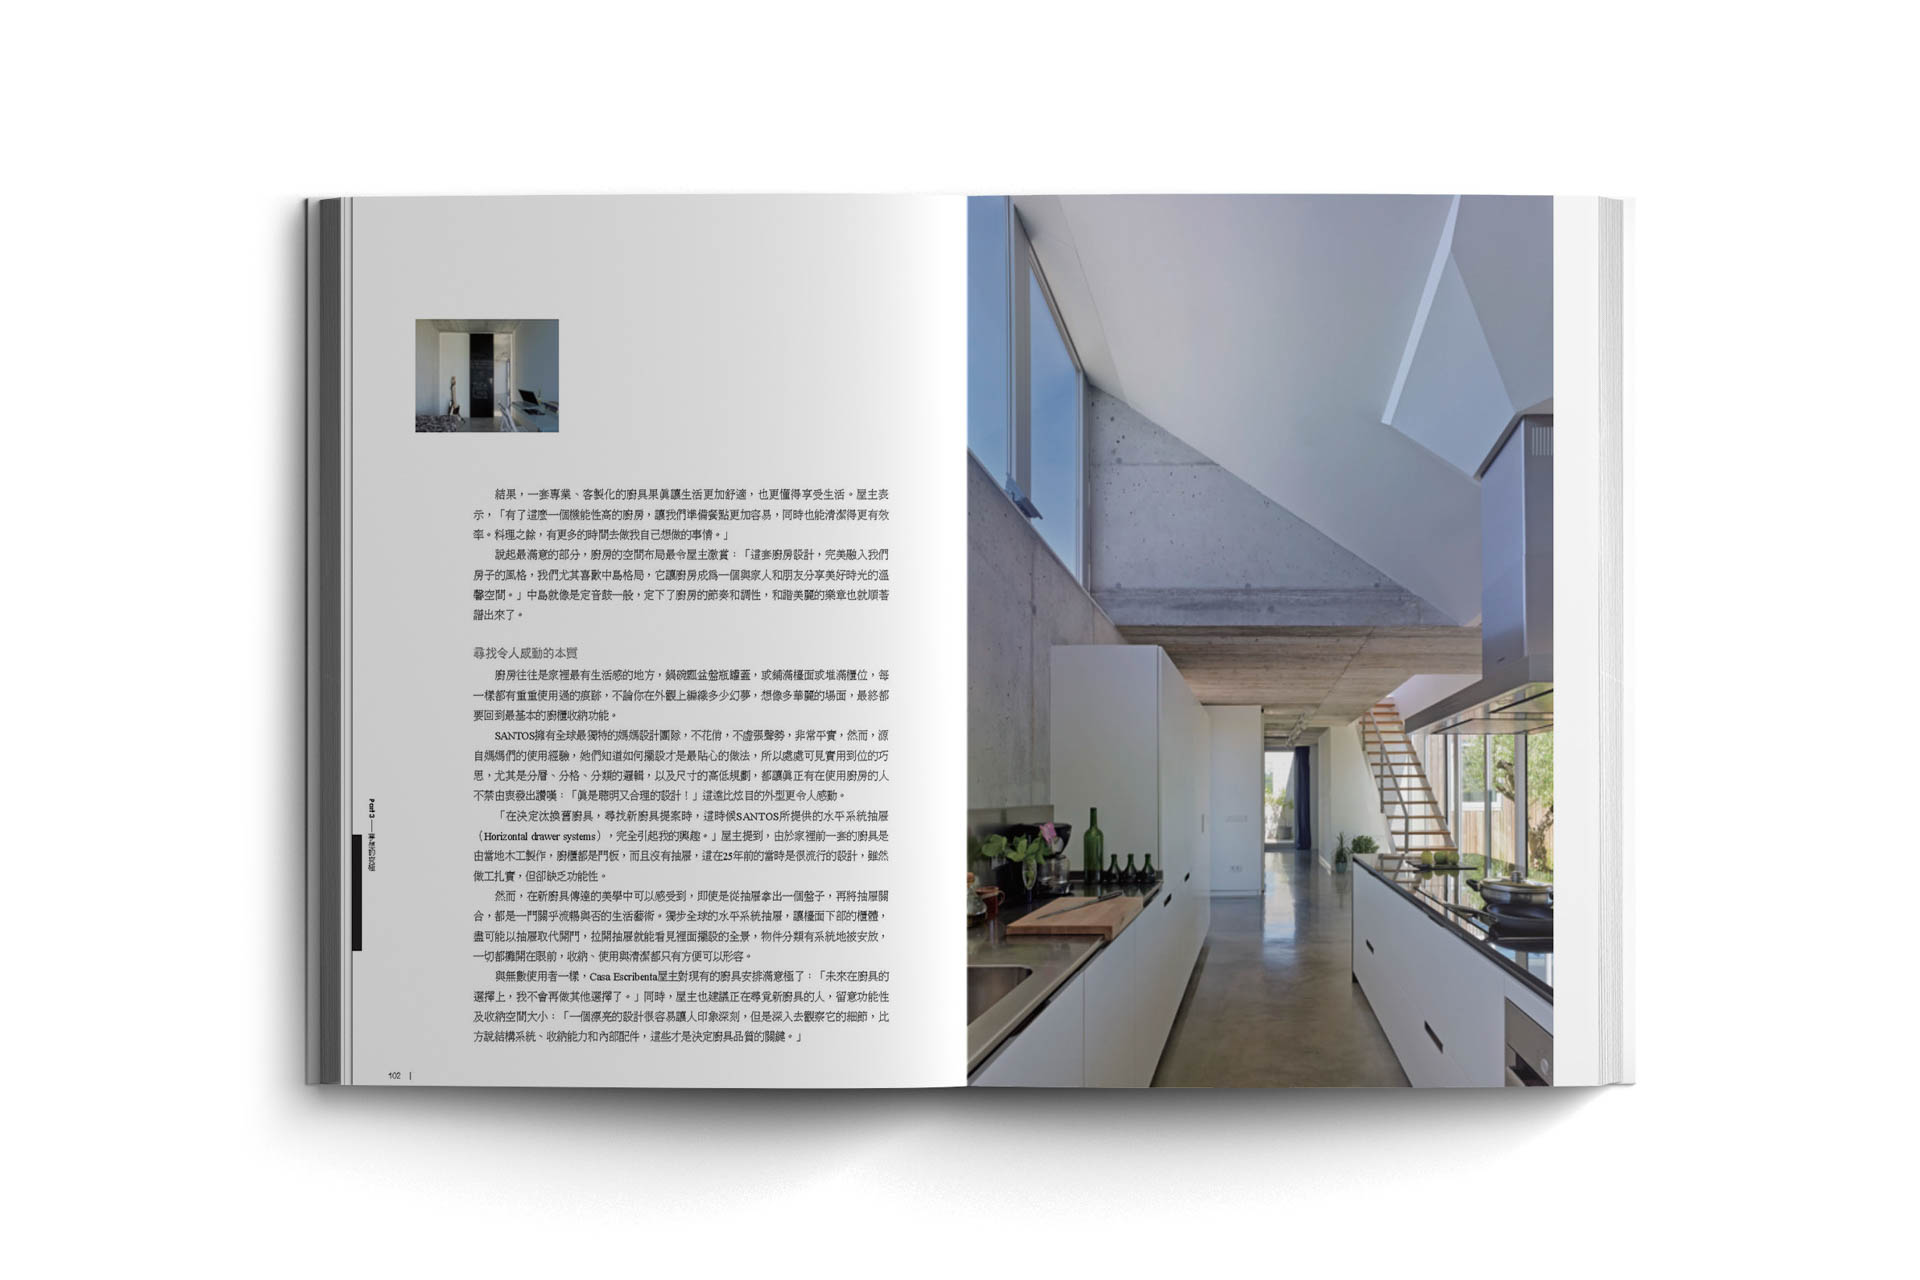 Un proyecto de Santiago Interiores, destacado en un libro de diseño de cocinas de Taiwán | Cocinas Santos